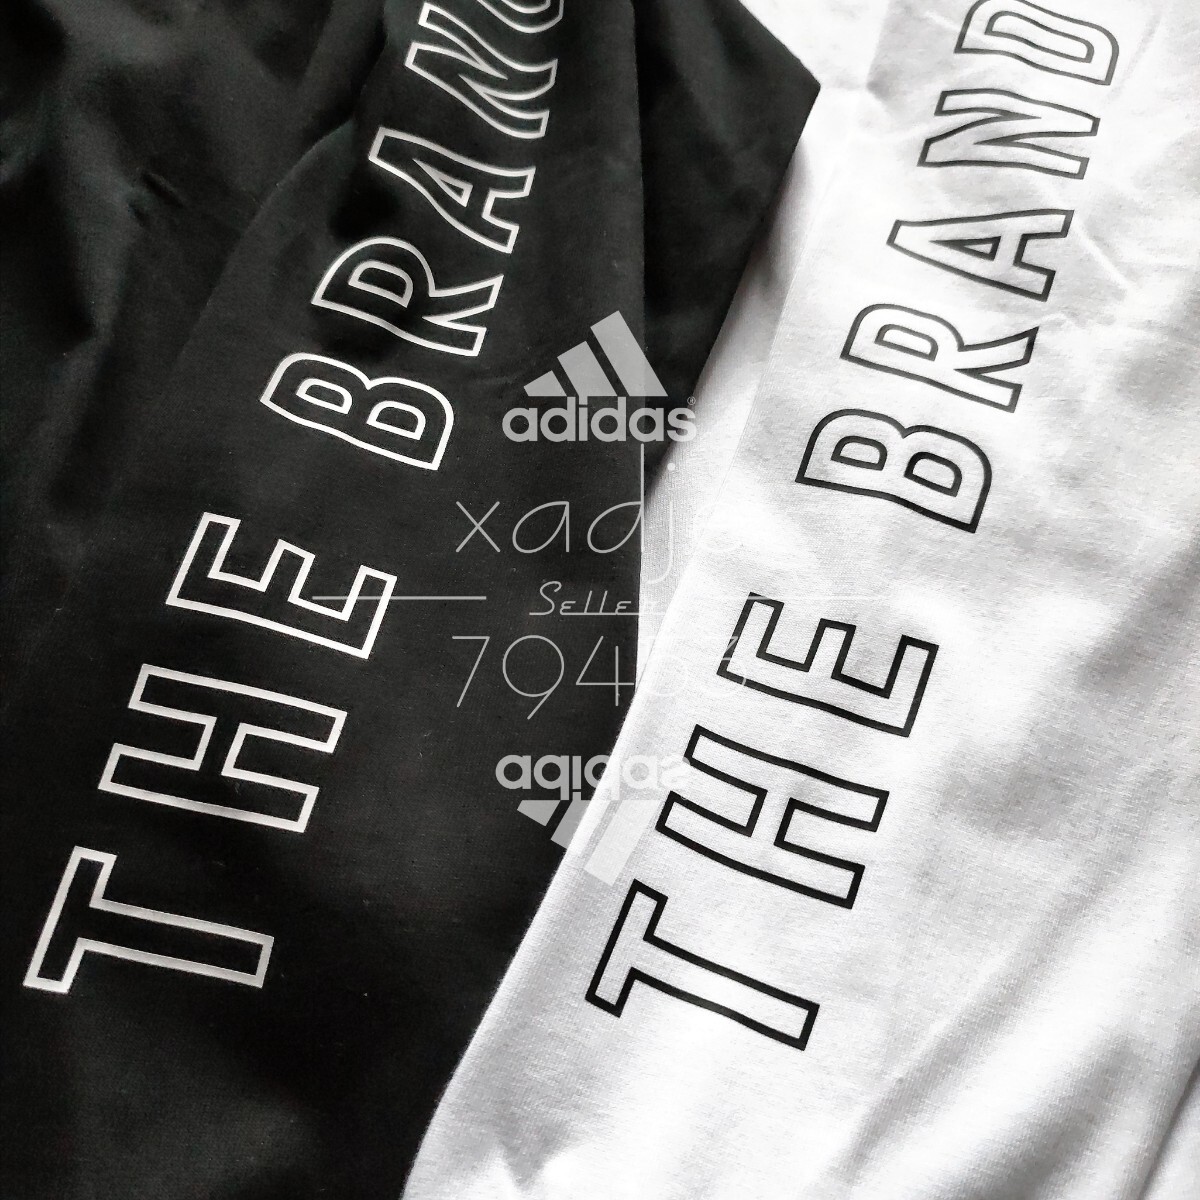  новый товар стандартный товар adidas Adidas 2 шт. комплект длинный рукав long T принт THREE STRIPES чёрный черный белый белый Logo принт толстый M